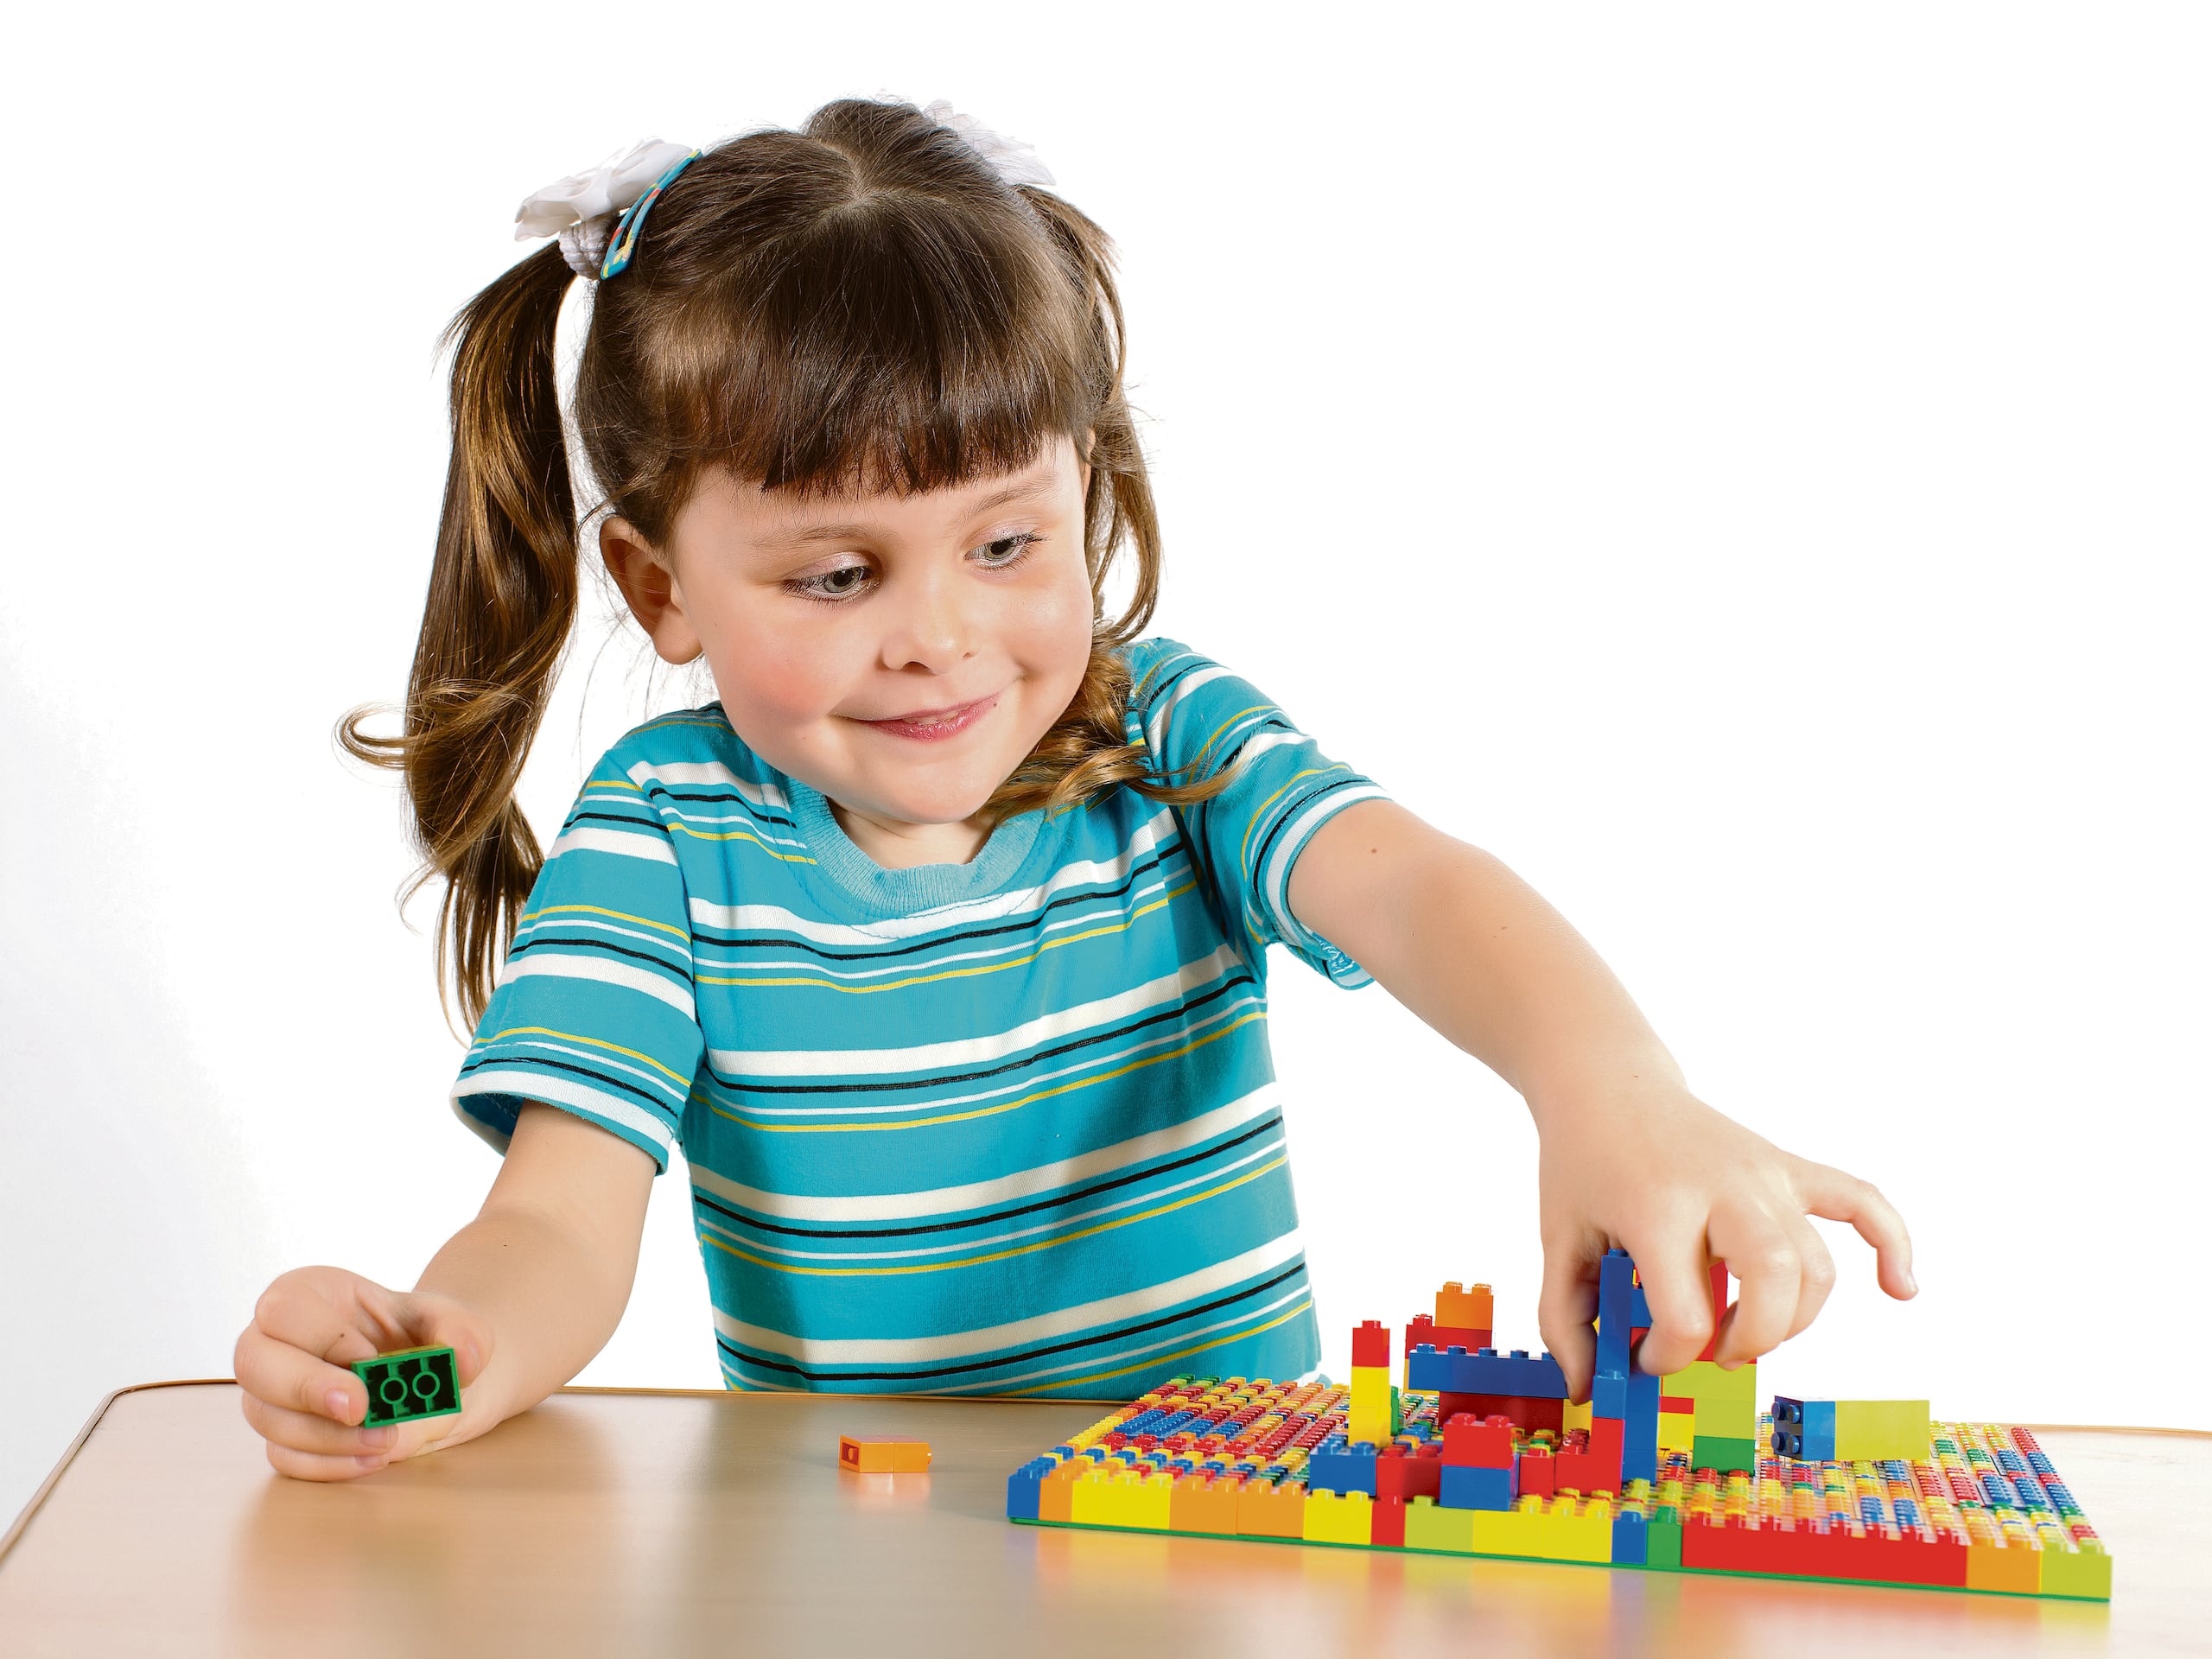 Los bloques o Legos ayudan al desarrollo motor fino y la escritura.